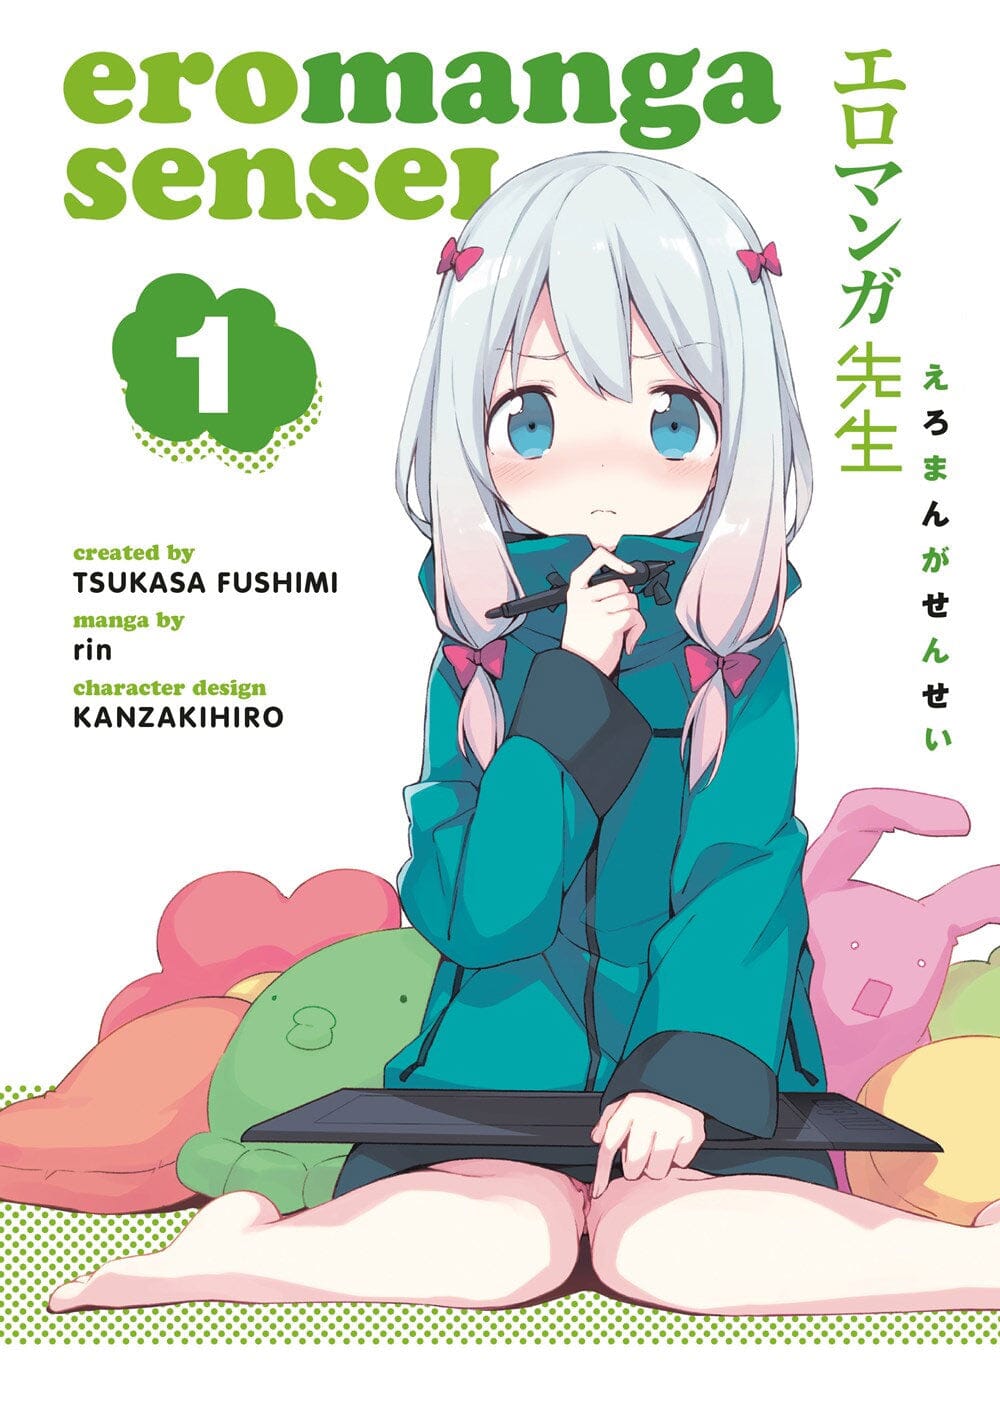 Ero-manga sensei Vol.1 Manga Multizone: Comics And Games  | Multizone: Comics And Games